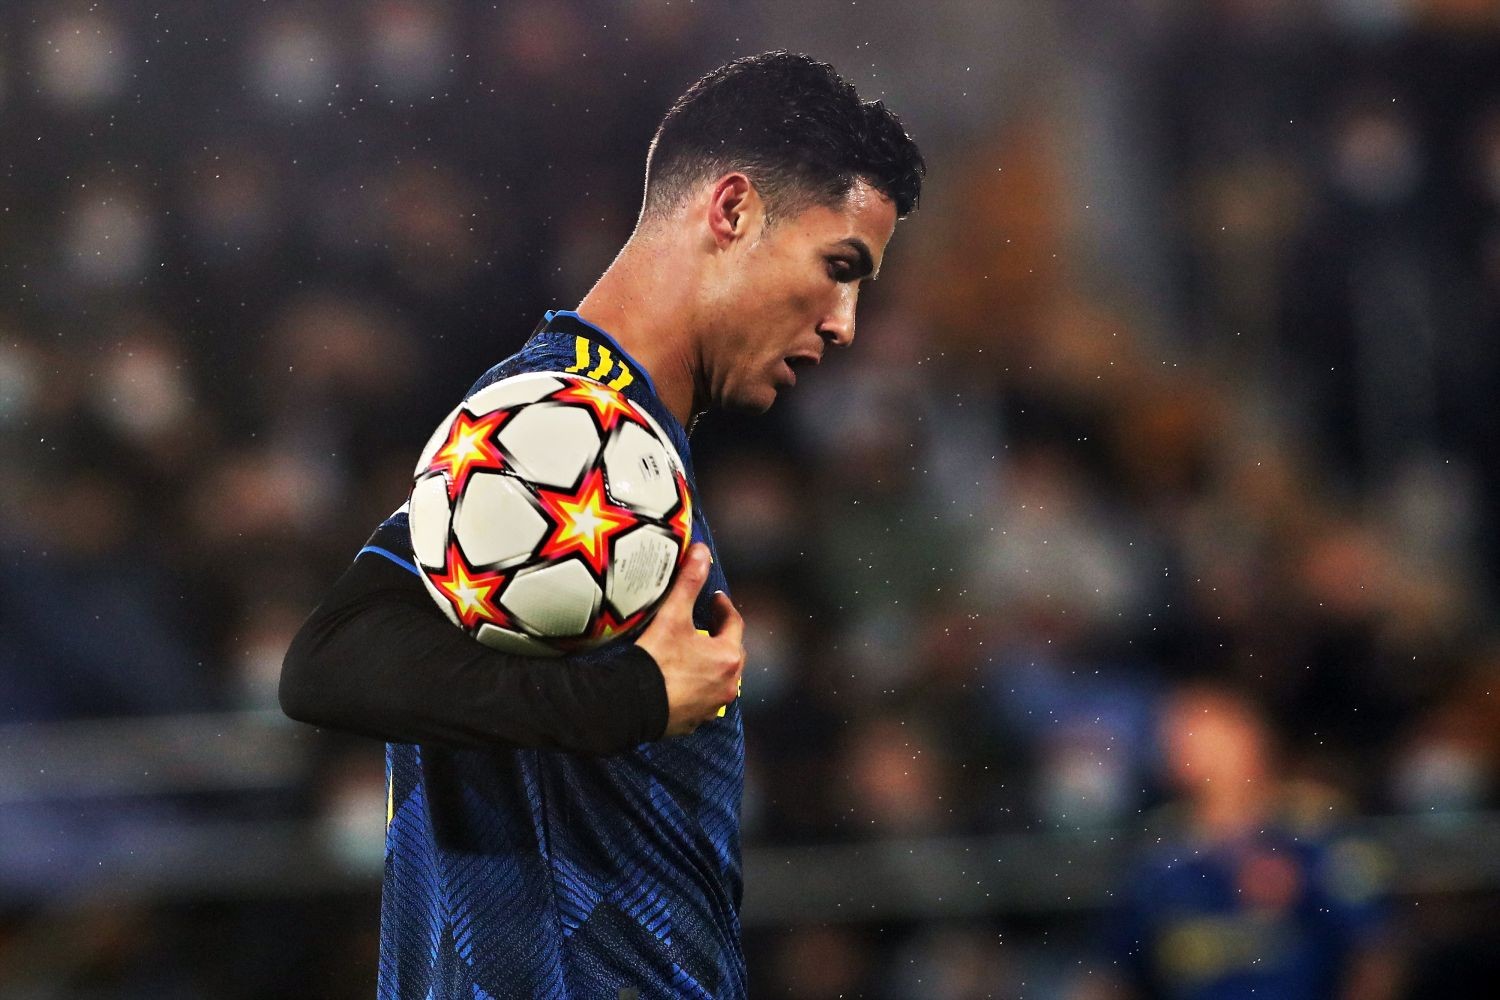 POTWIERDZONE: Dwa kluby odrzucają możliwość zimowego transferu Cristiano Ronaldo